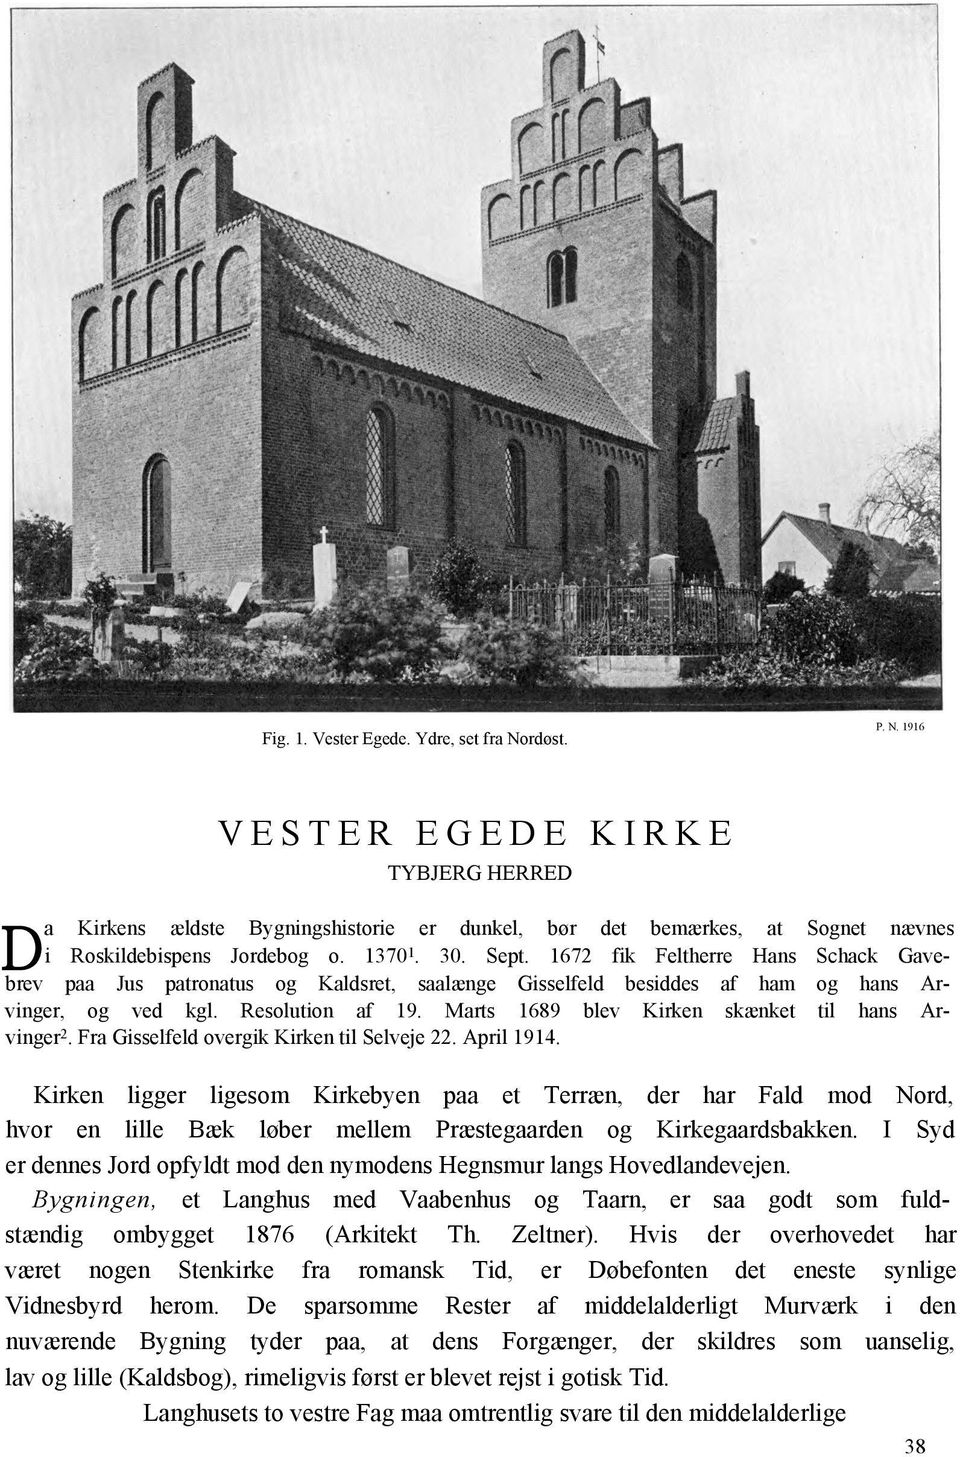 Marts 1689 blev Kirken skænket til hans Arvinger 2. Fra Gisselfeld overgik Kirken til Selveje 22. April 1914.